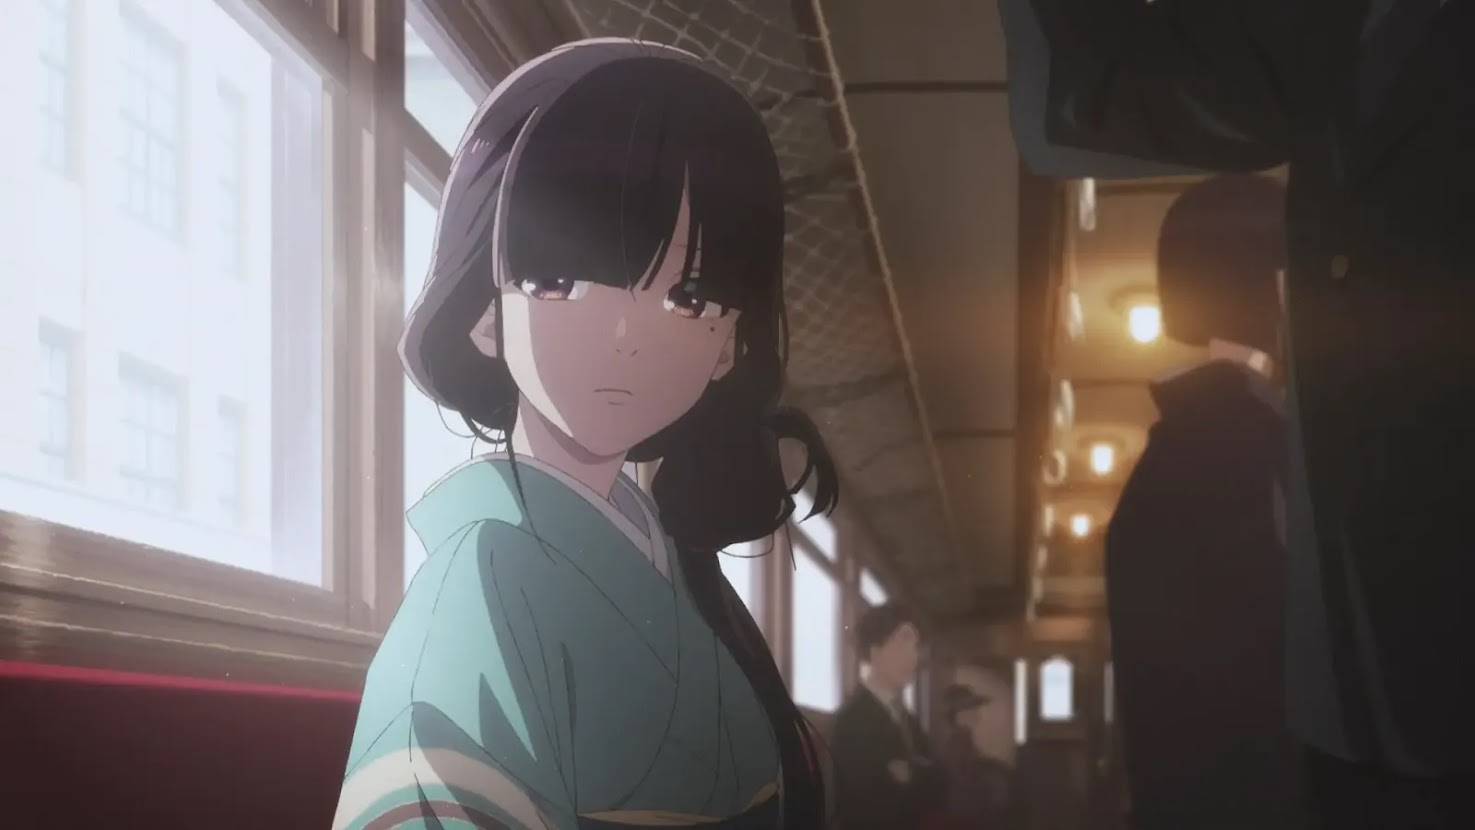 Meu Casamento Feliz' é o anime mais lindo disponível na Netflix